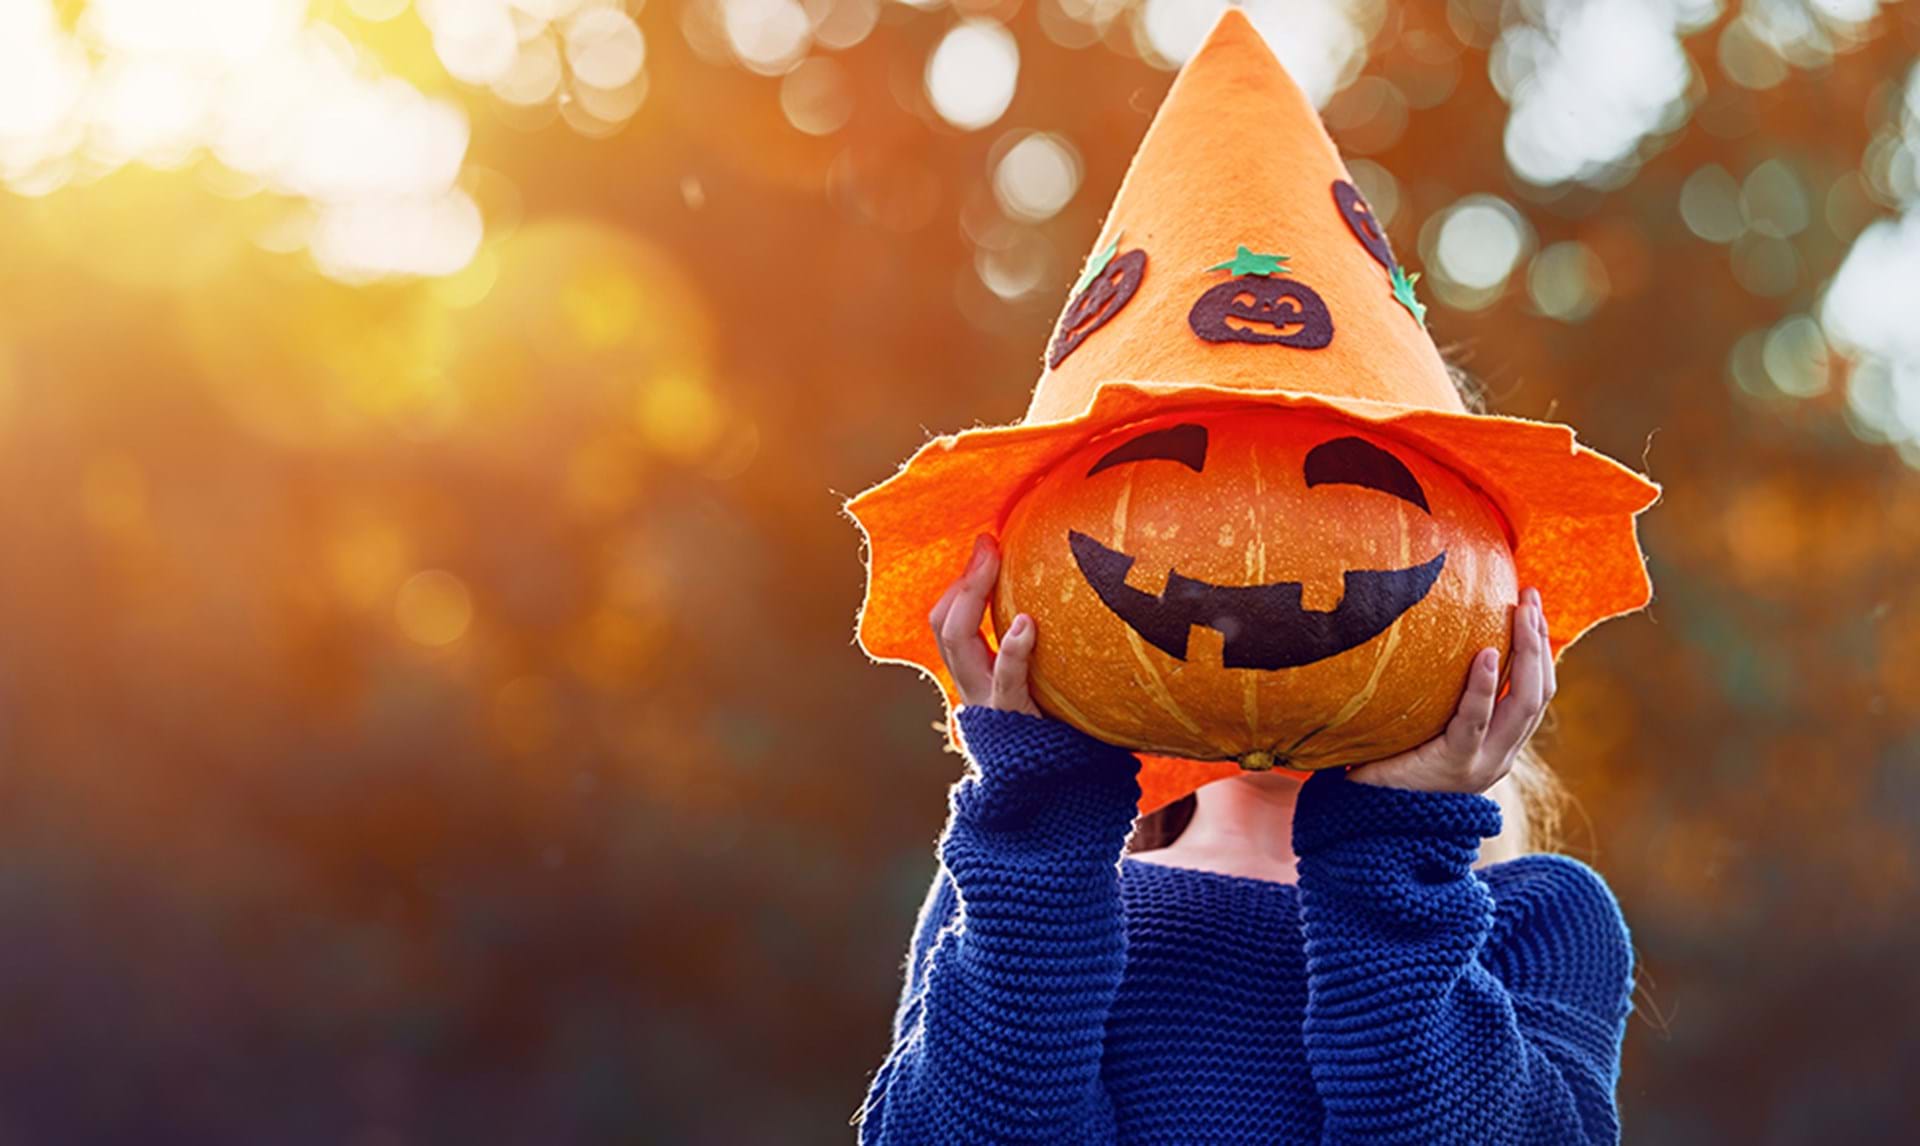 Halloween græskar: Se 12 sjove ideer til græskar her -